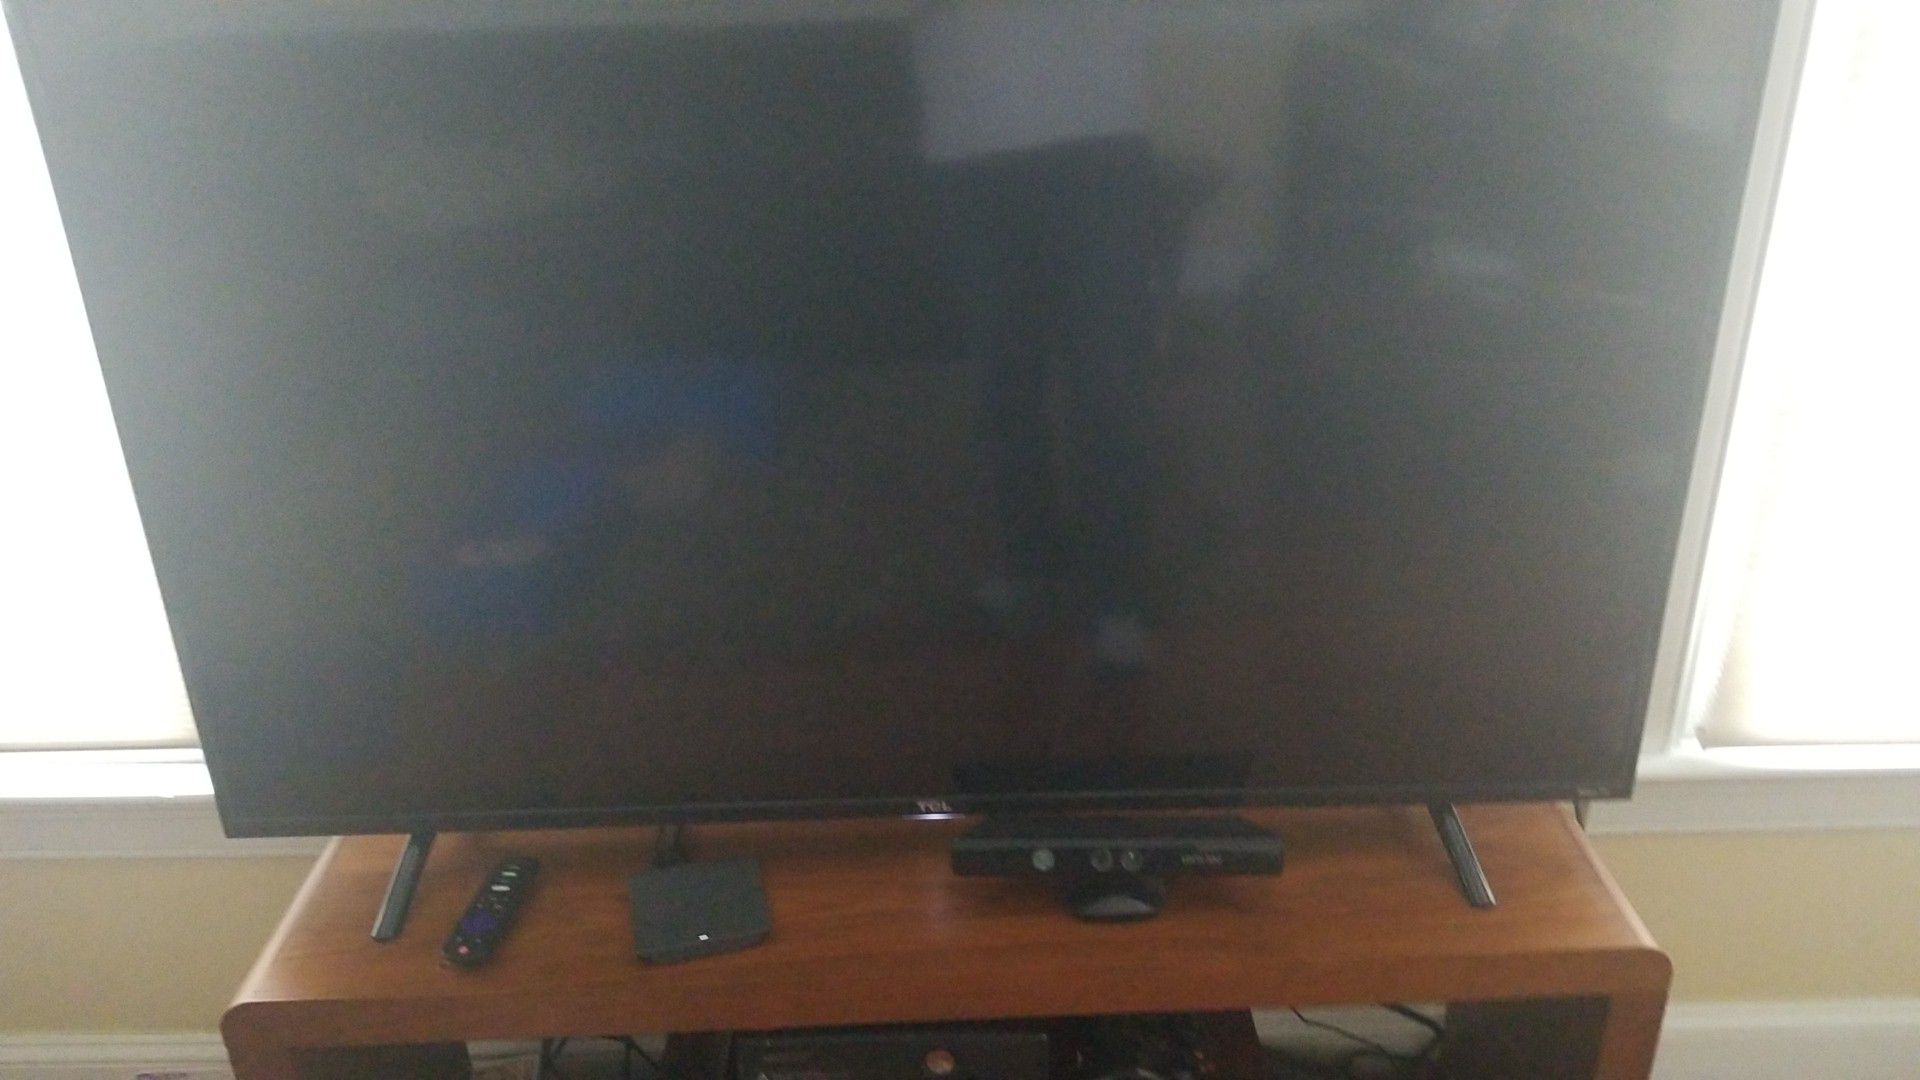 Brand new TV. 45 inch